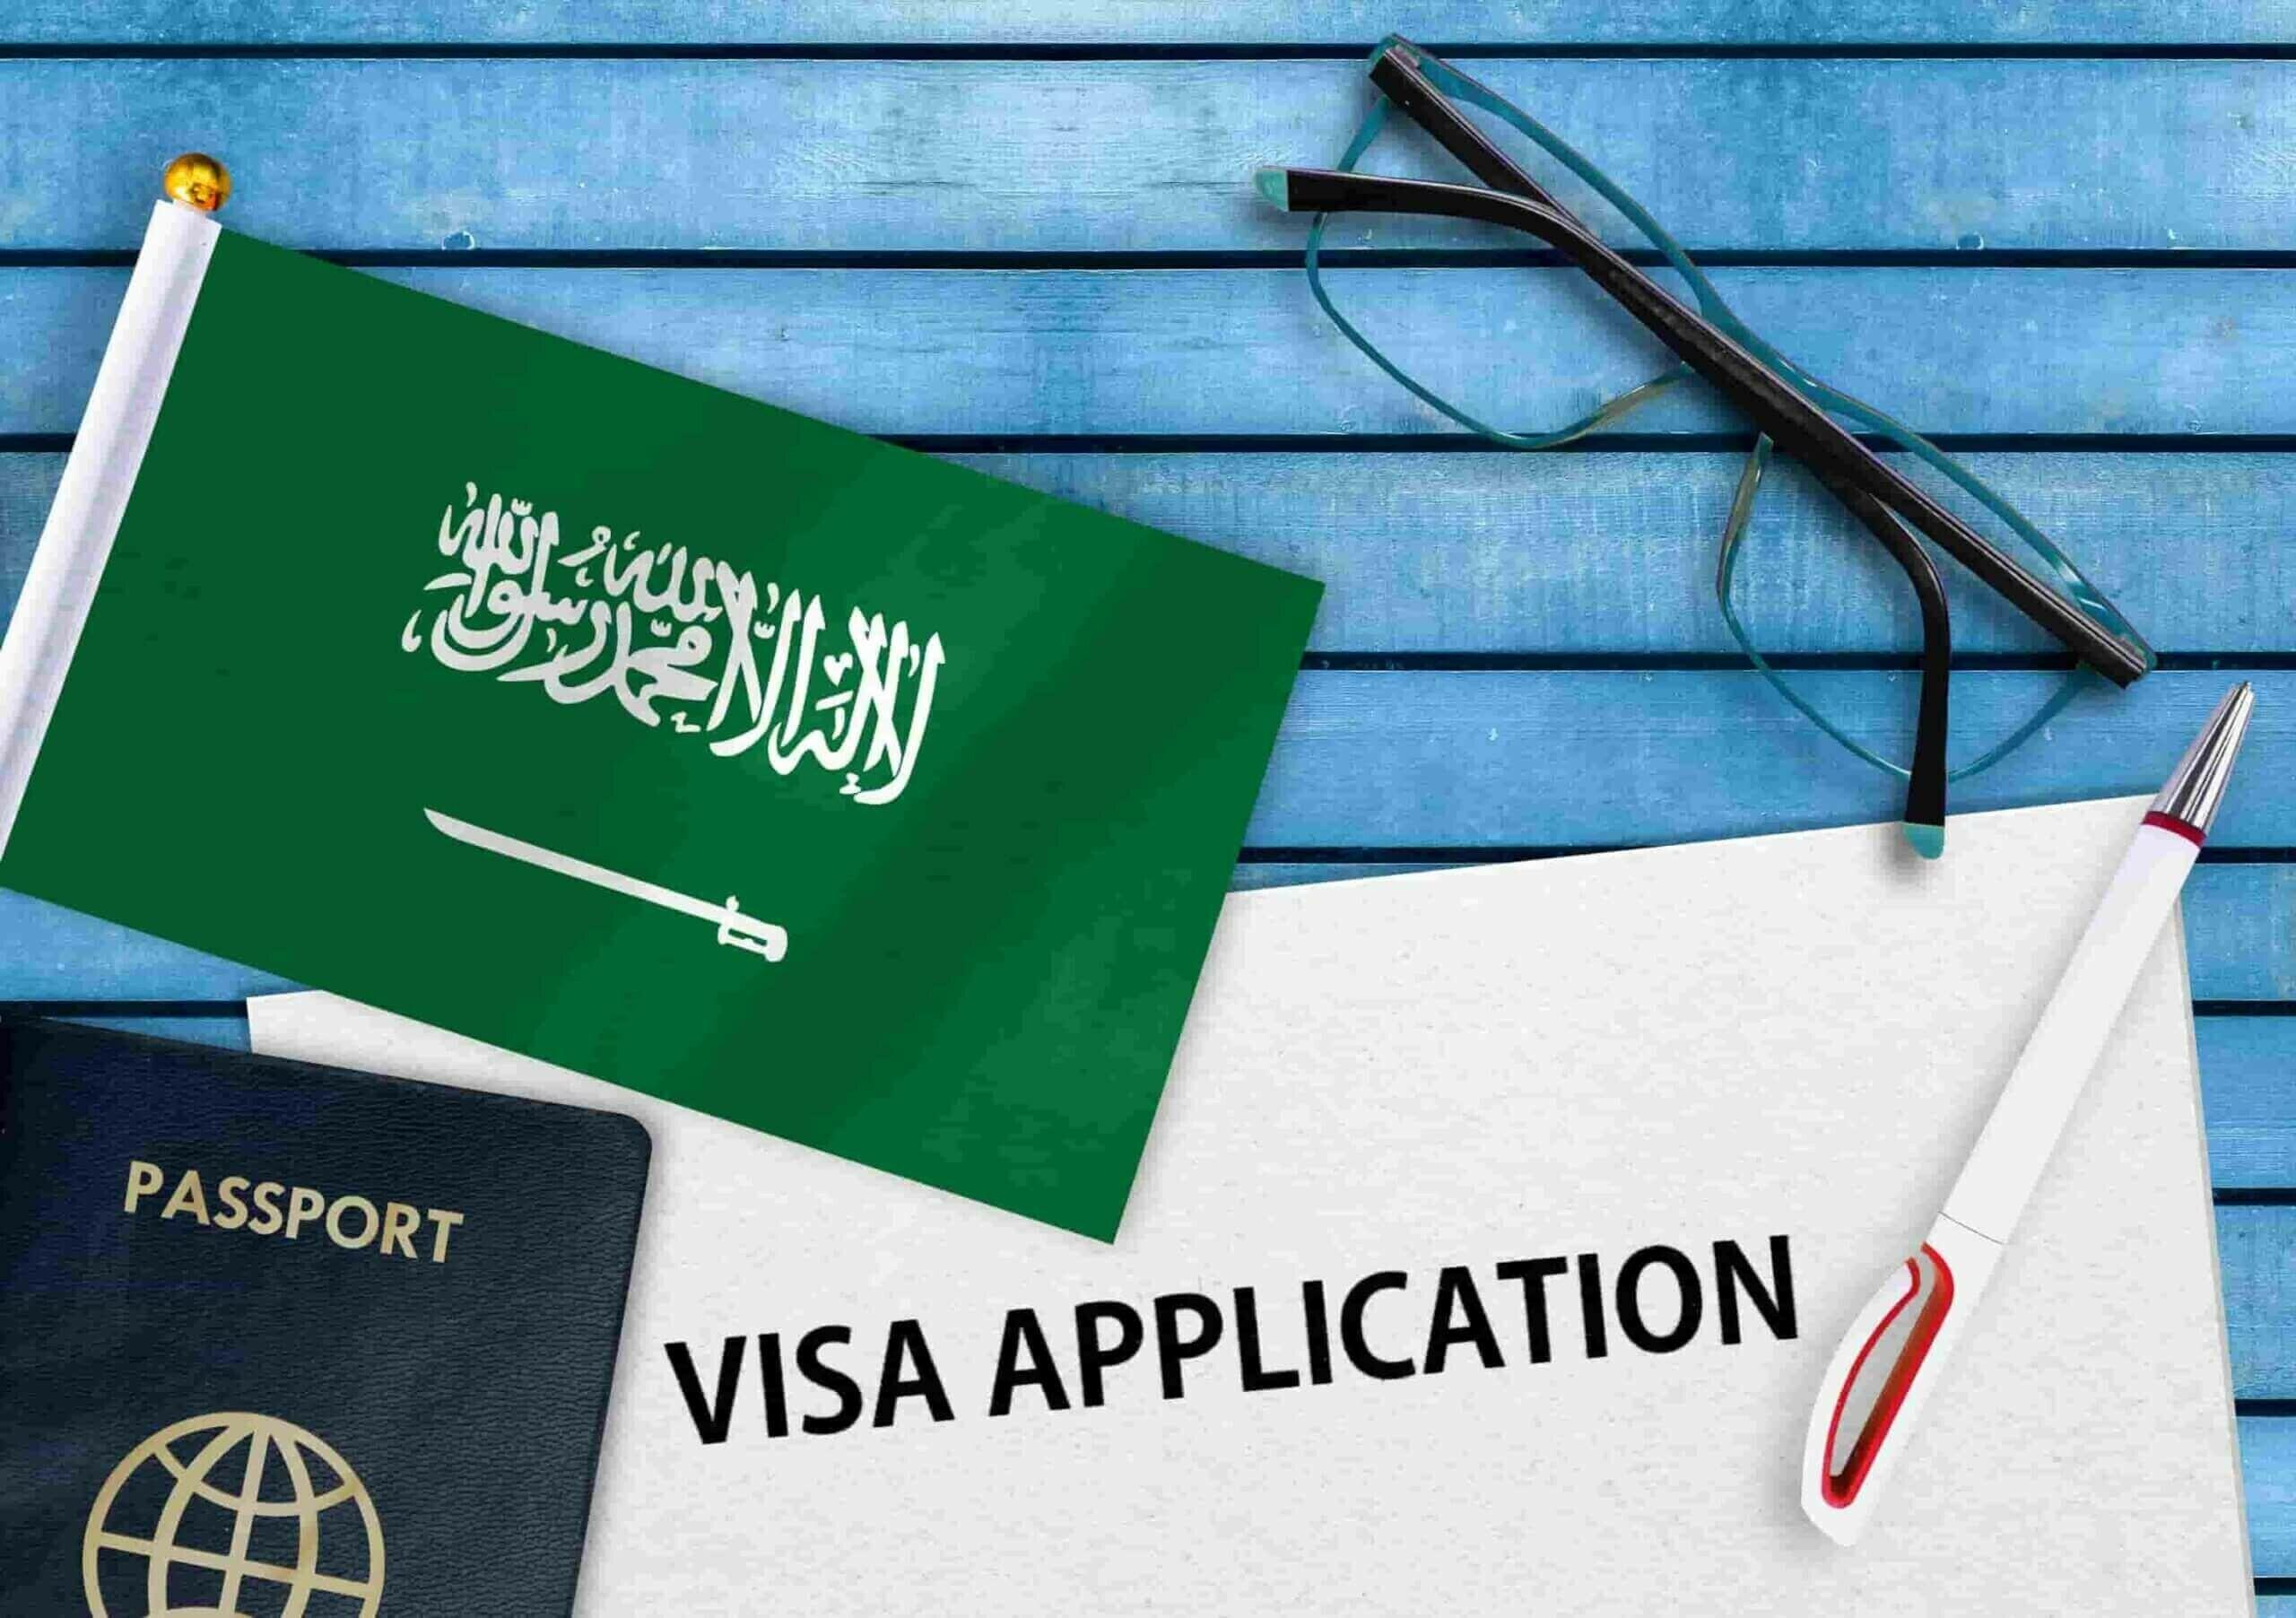 saudi arabia visit visa from india